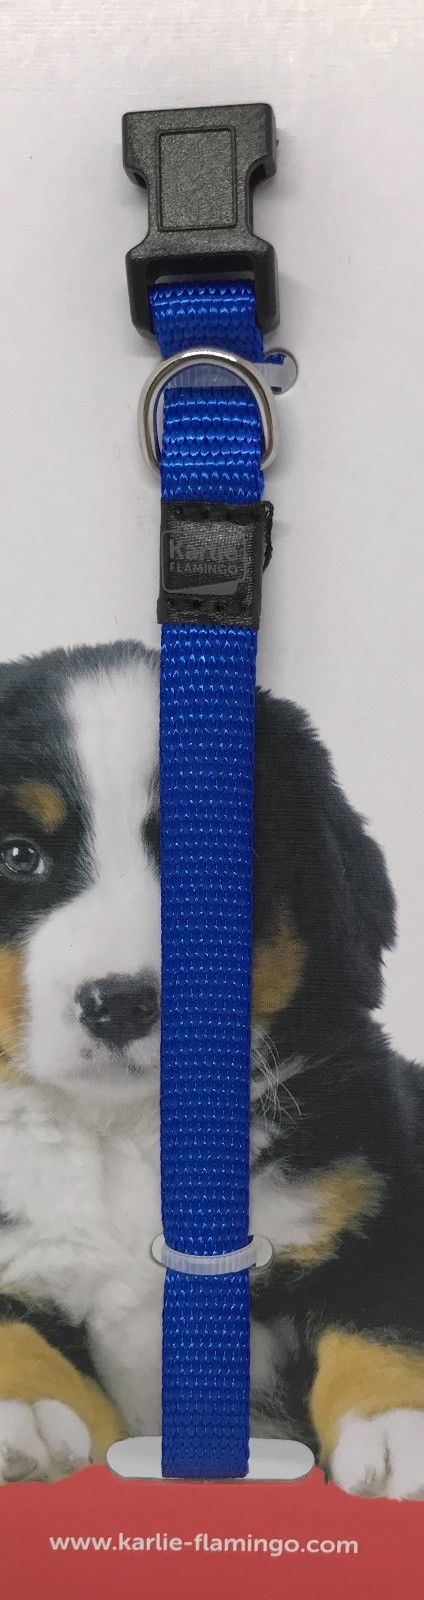 Karlie verstellbares Welpen Hunde Halsband Welpenhalsband 4 Farben 20 30 cm 10mm 253230056952 6